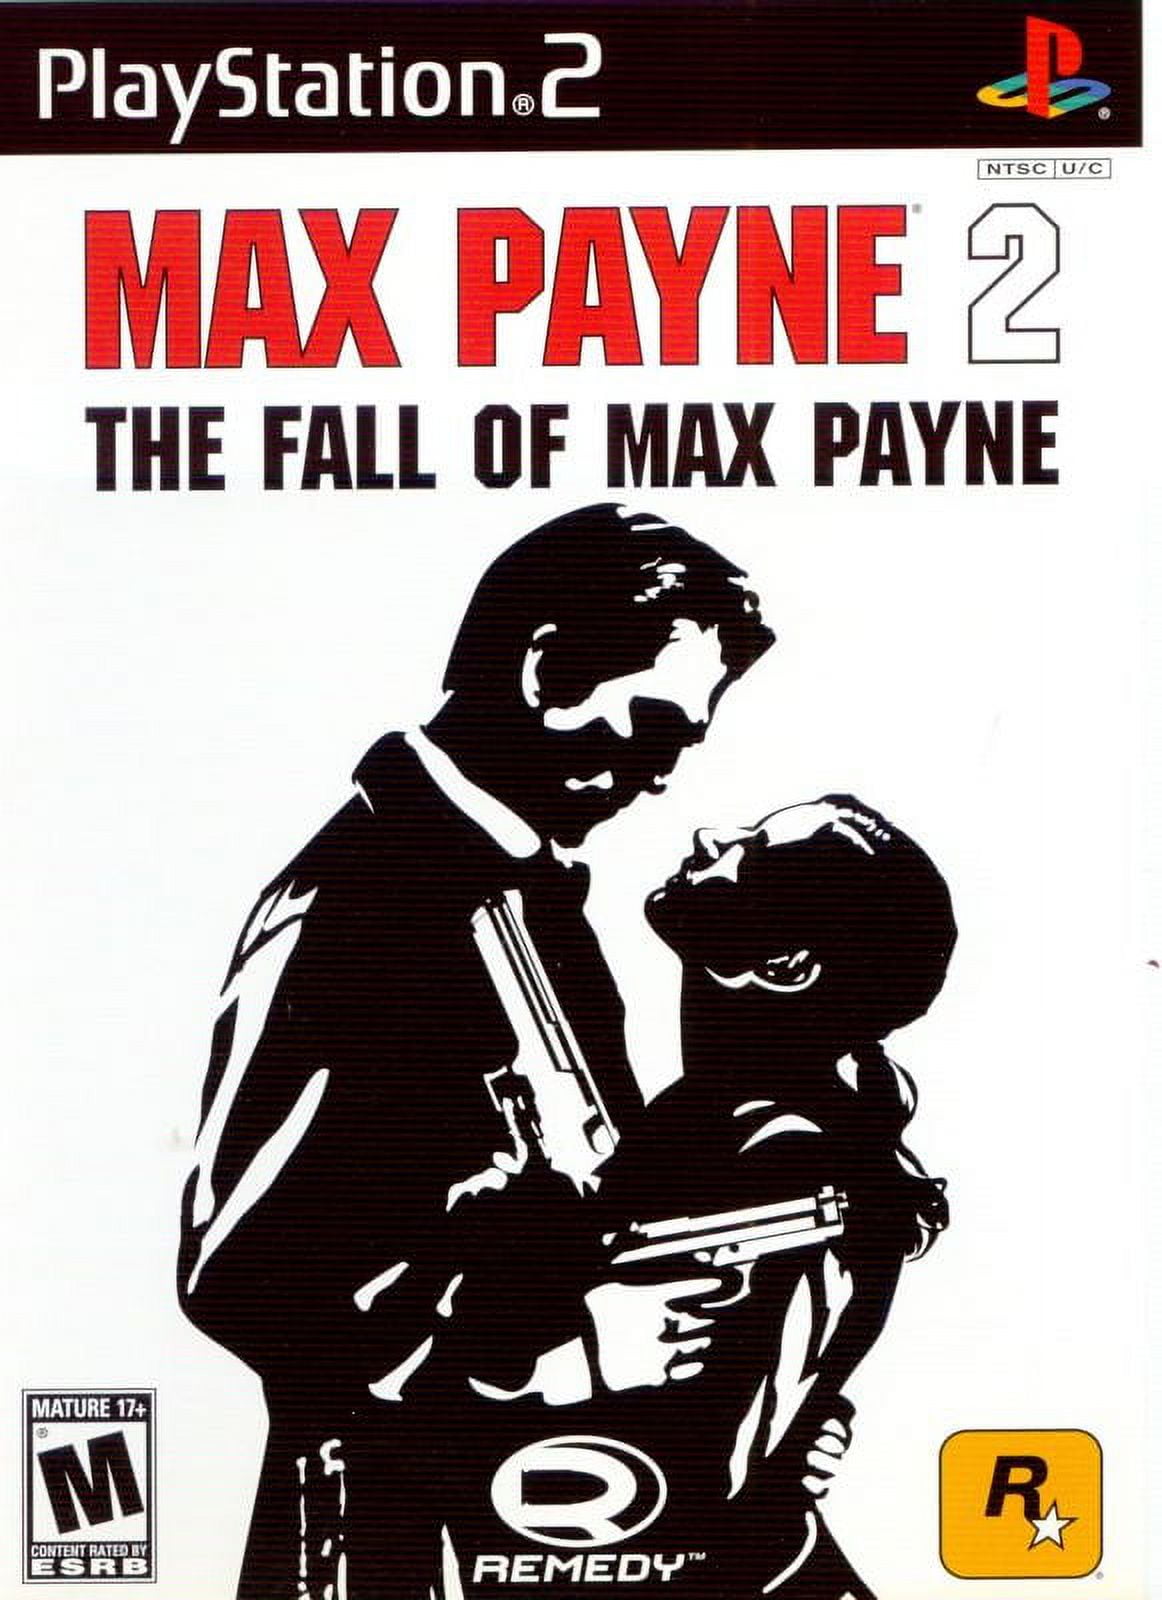 Max-Payne-2-The-Fall-of-Max-Payne-PS2-PlayStation-2-Used_5e623498-8875-498e-b11d-f426e6e9477e.bebfbdcd2310310f0d1ef5d4ebdbec4f.jpeg